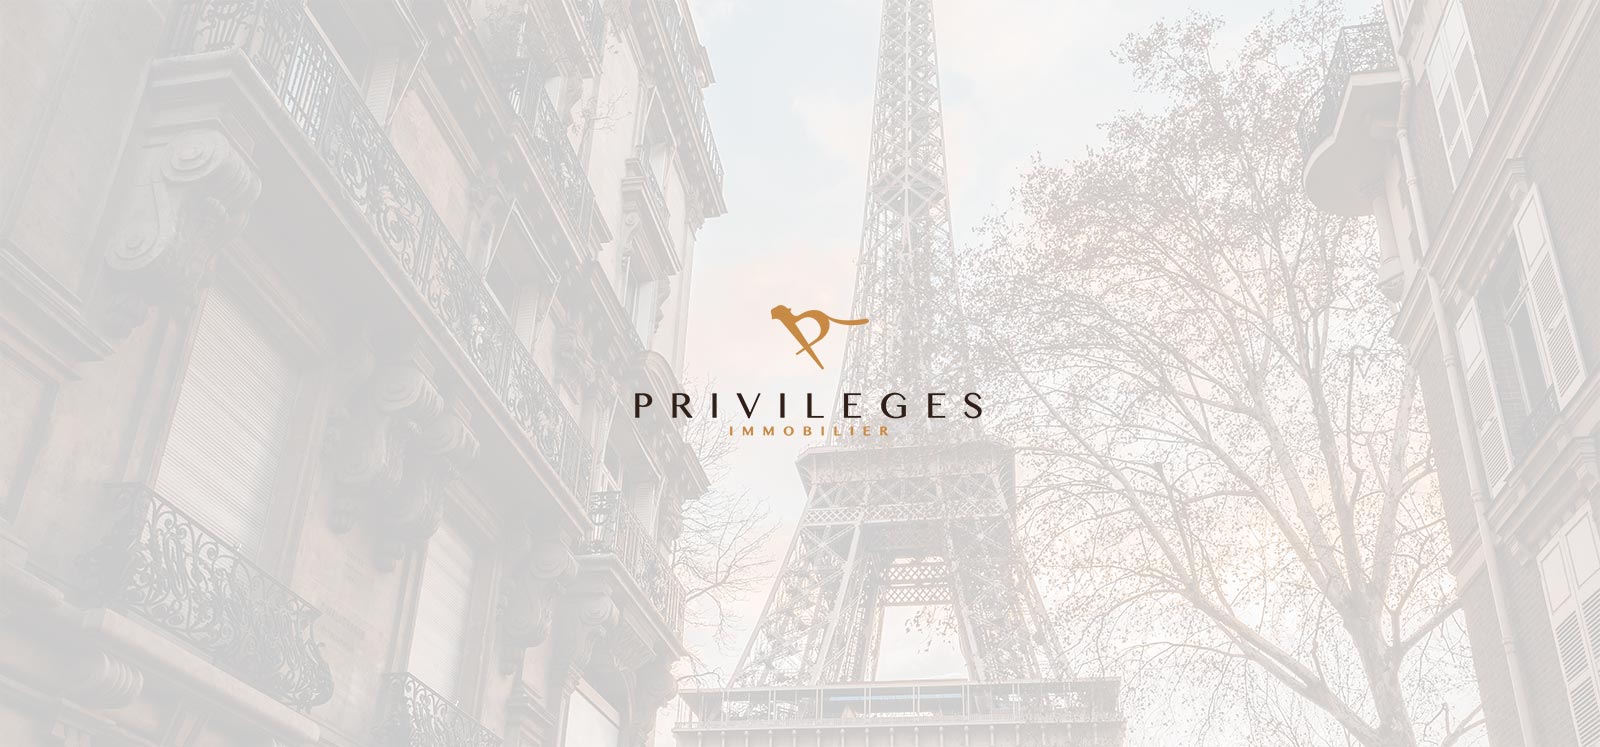 privileges immobilier identite graphique - Privilèges Immobilier